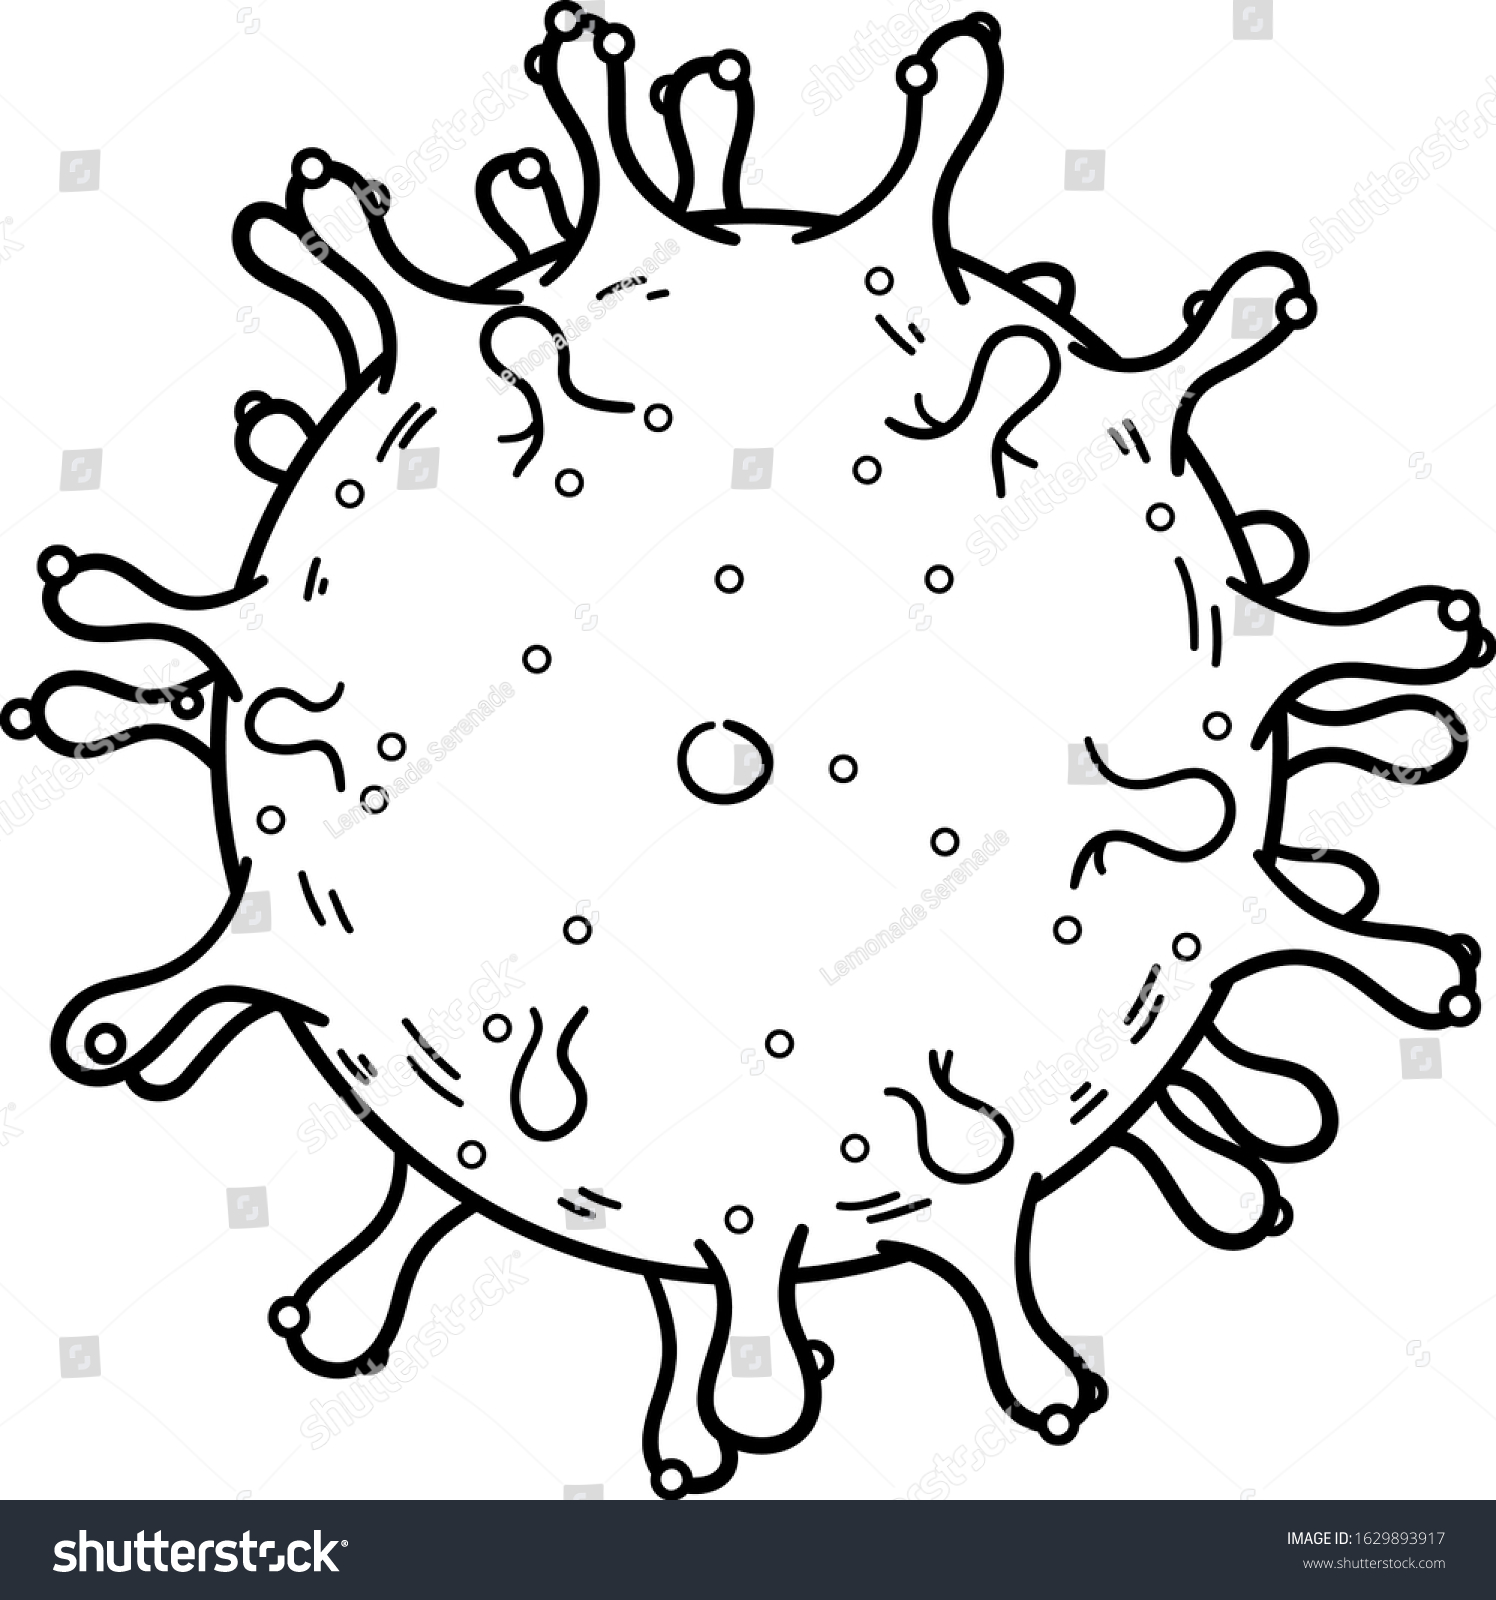 Коронавирус бактерия рисунок